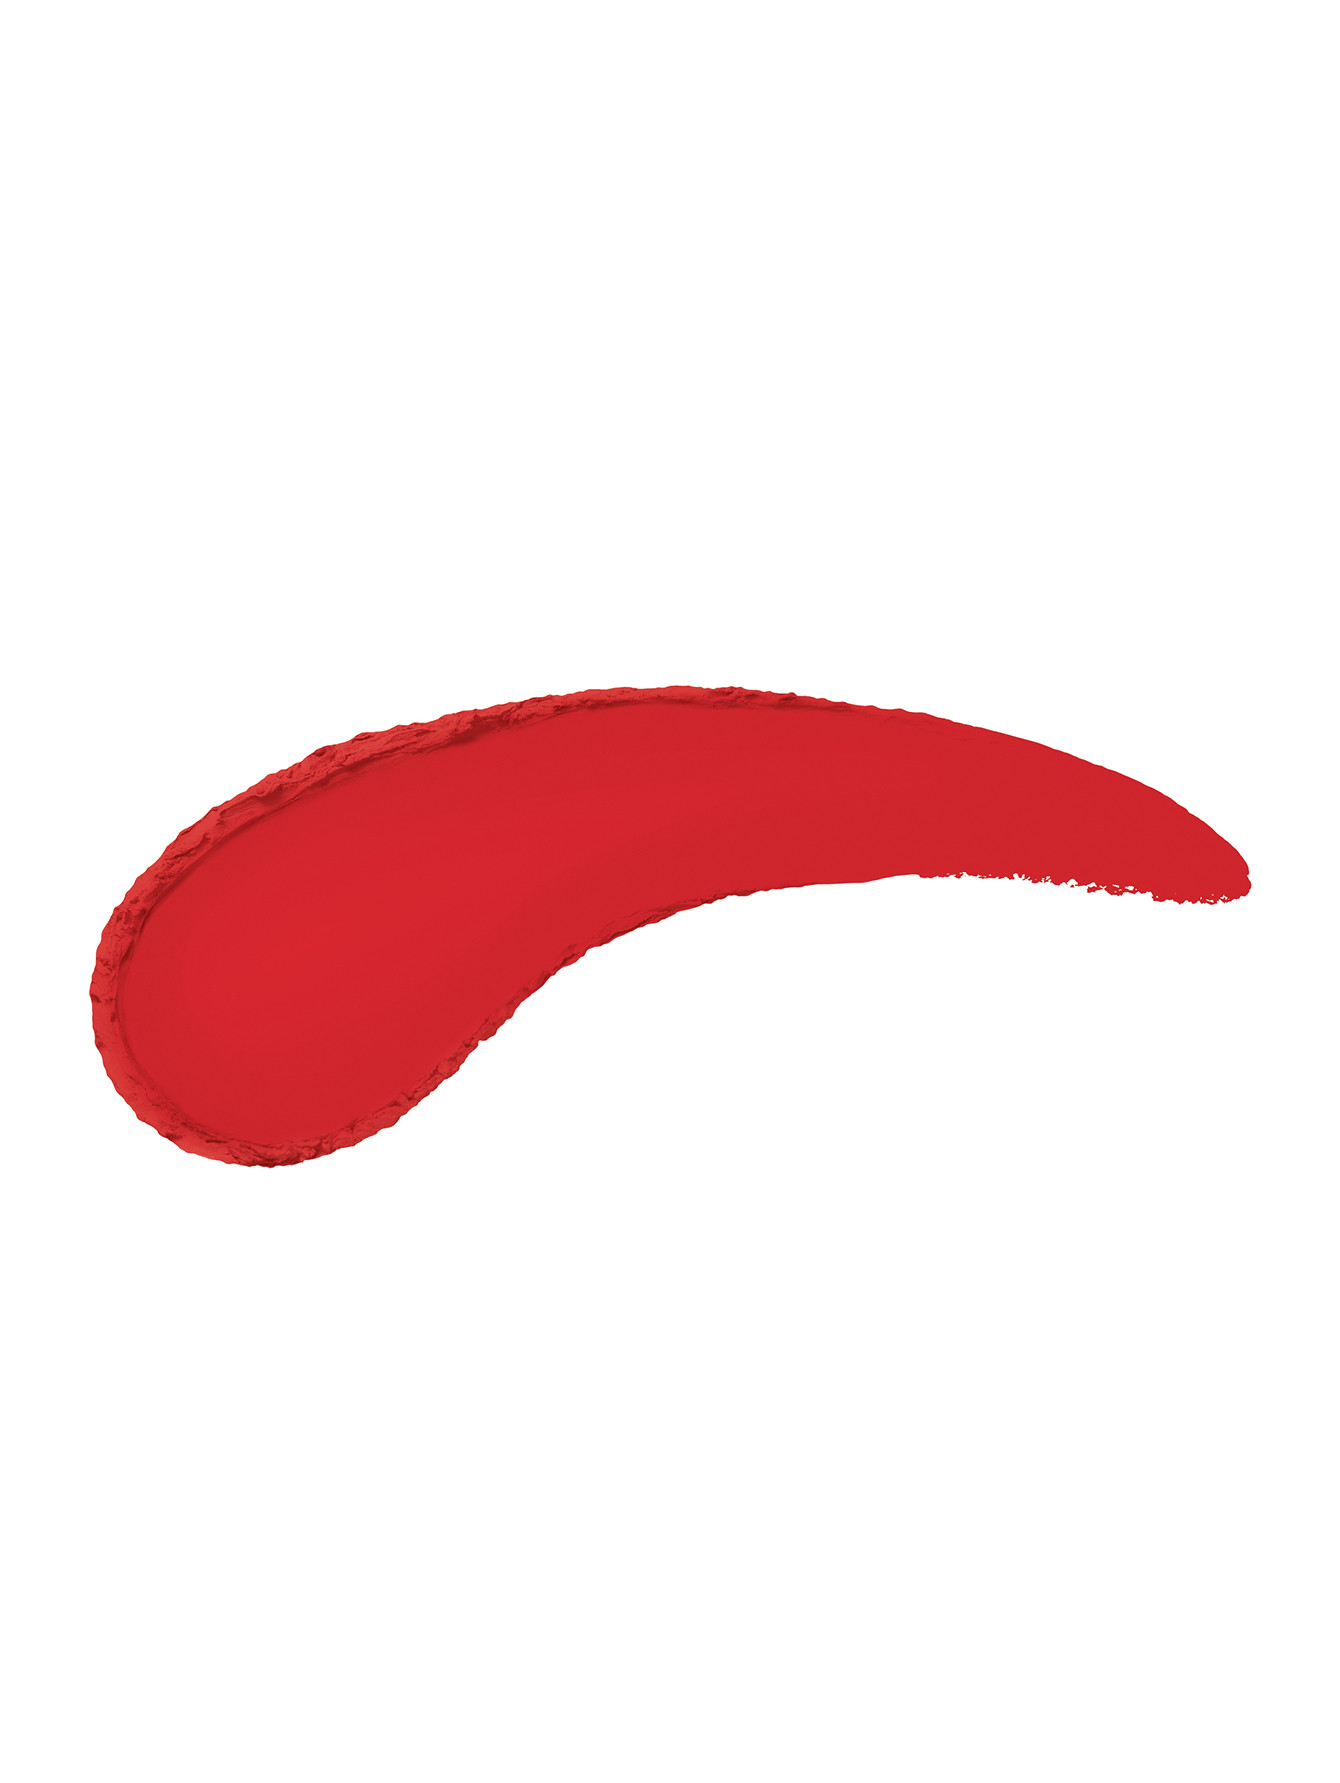 Стойкая матовая помада для губ The Only One Matte, 625 Vibrant Red, 3,5 г - Обтравка1